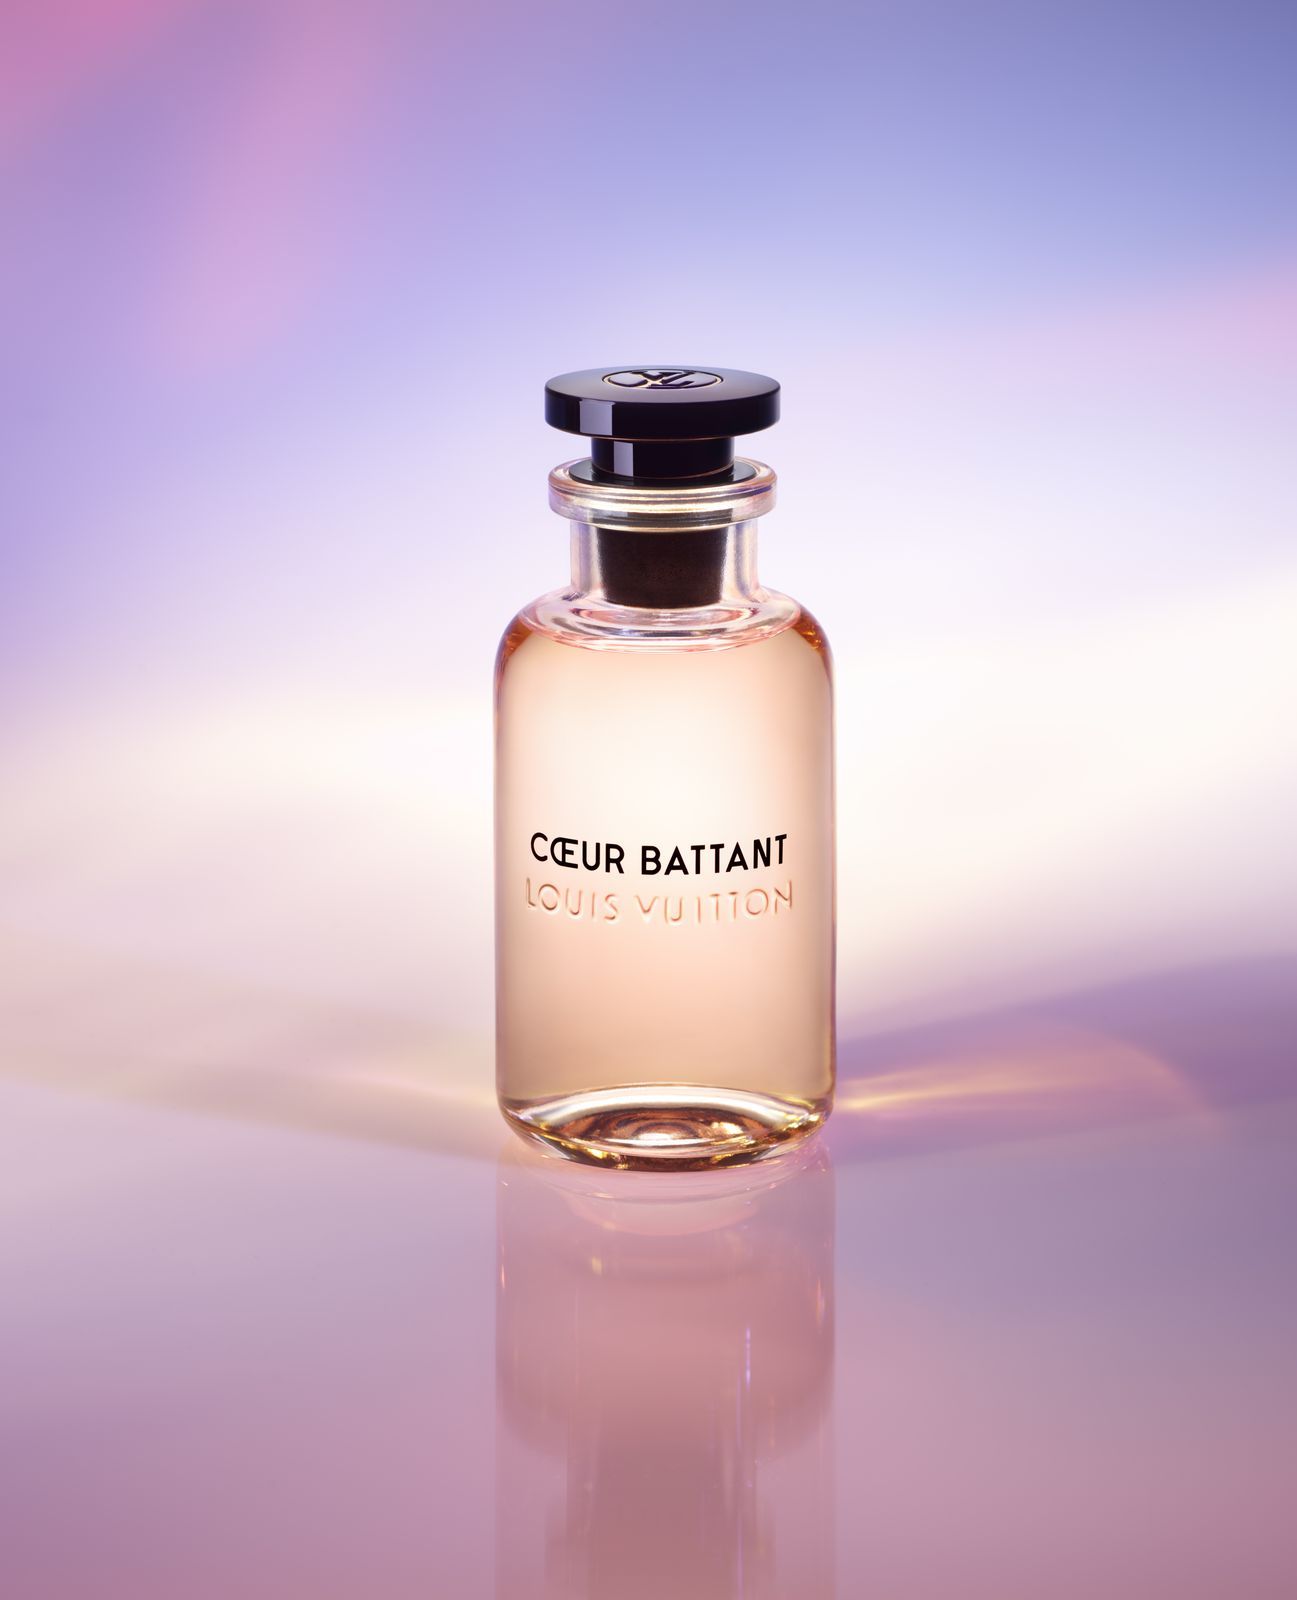 Louis Vuitton's Jacques Cavallier Belletrud: A Poet Of Perfume